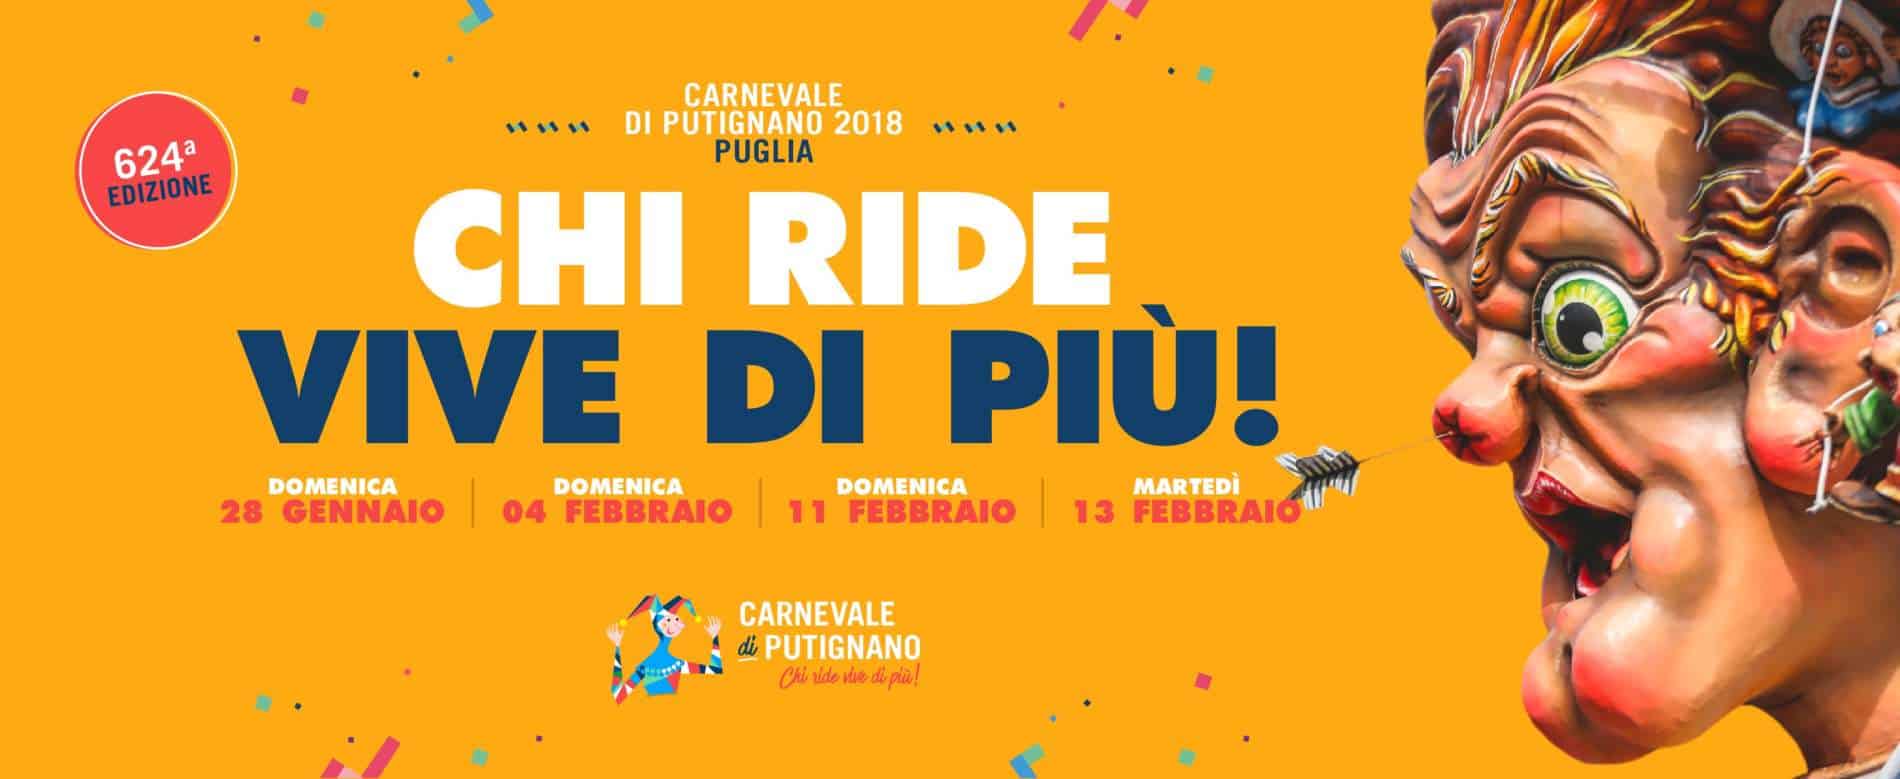 624a edizione Carnevale di Putignano